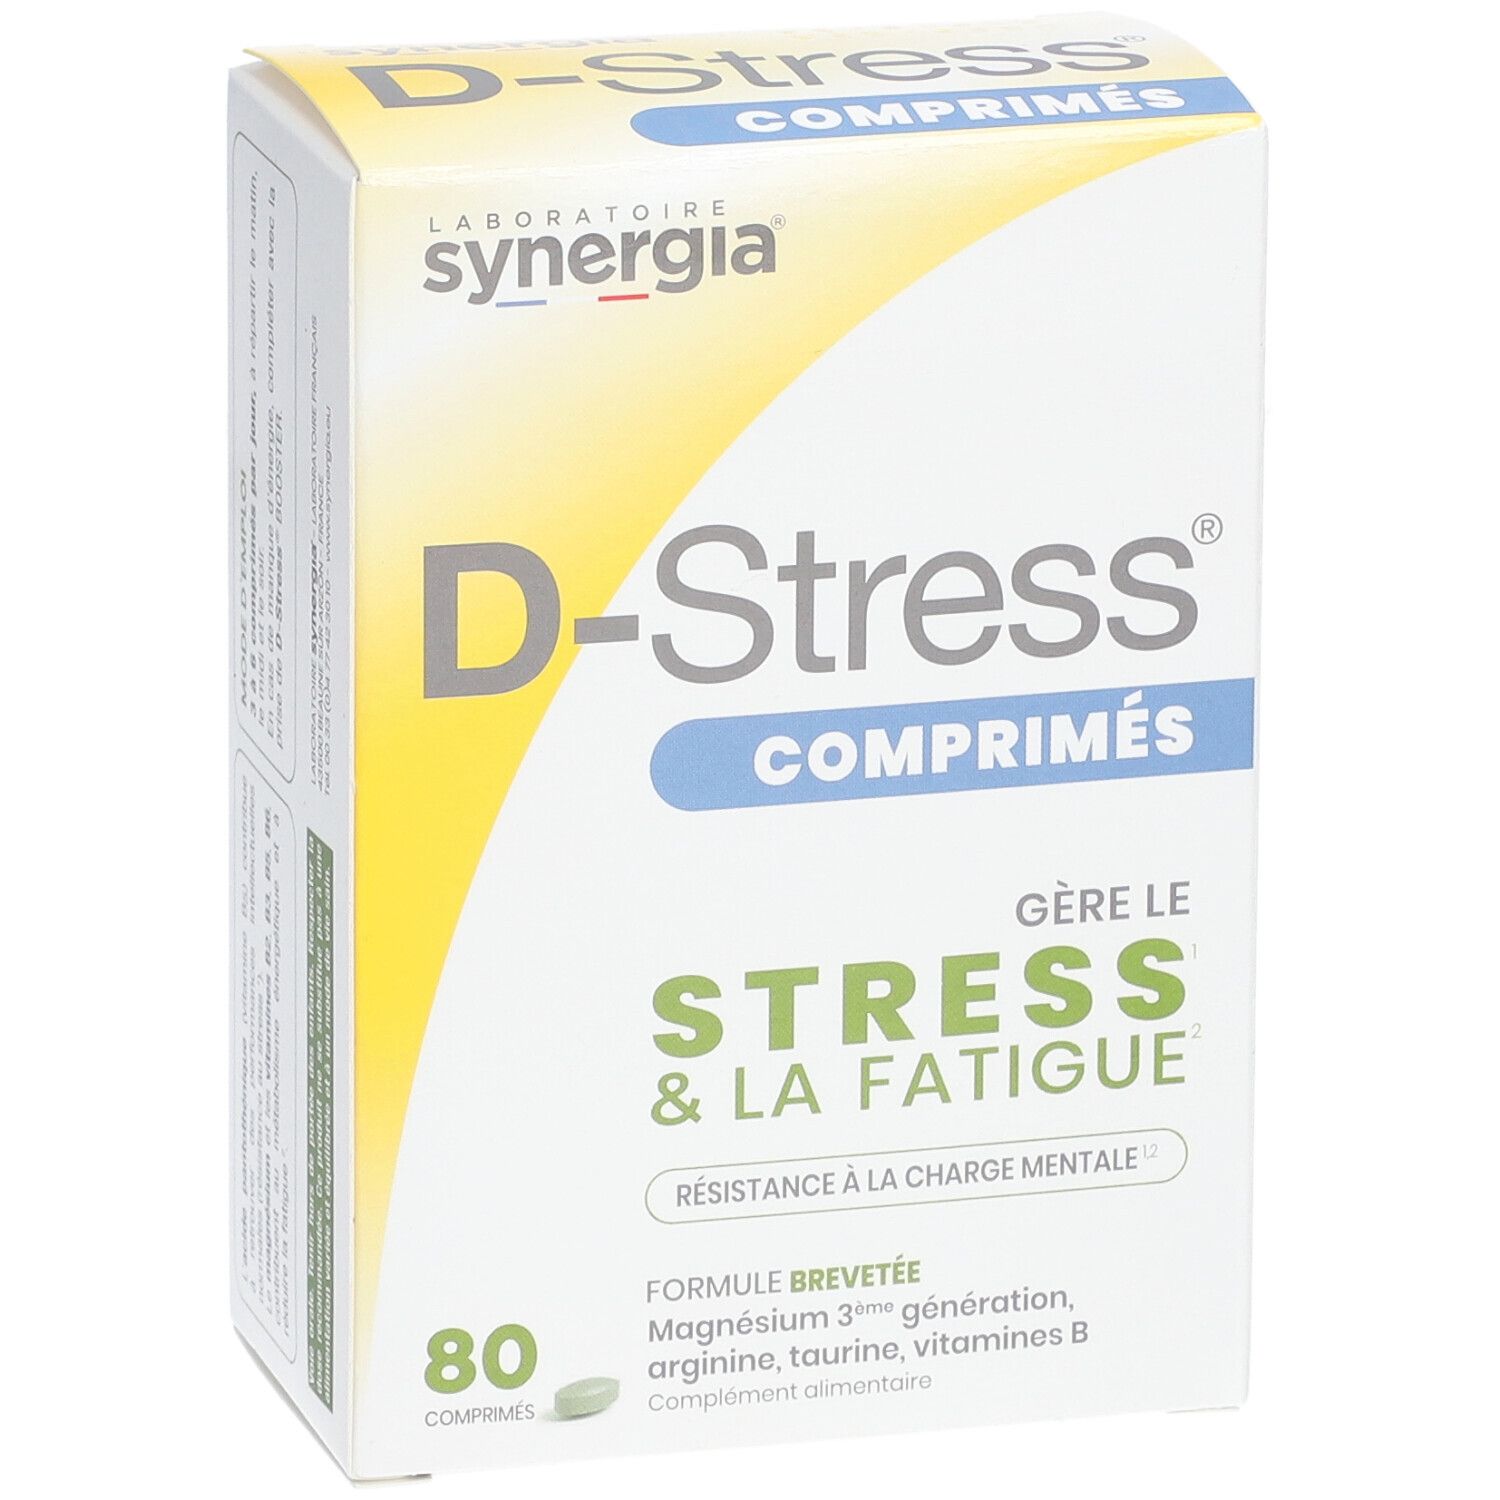 D-Stress - Synergia : Test complet, Avis, Prix et conseils